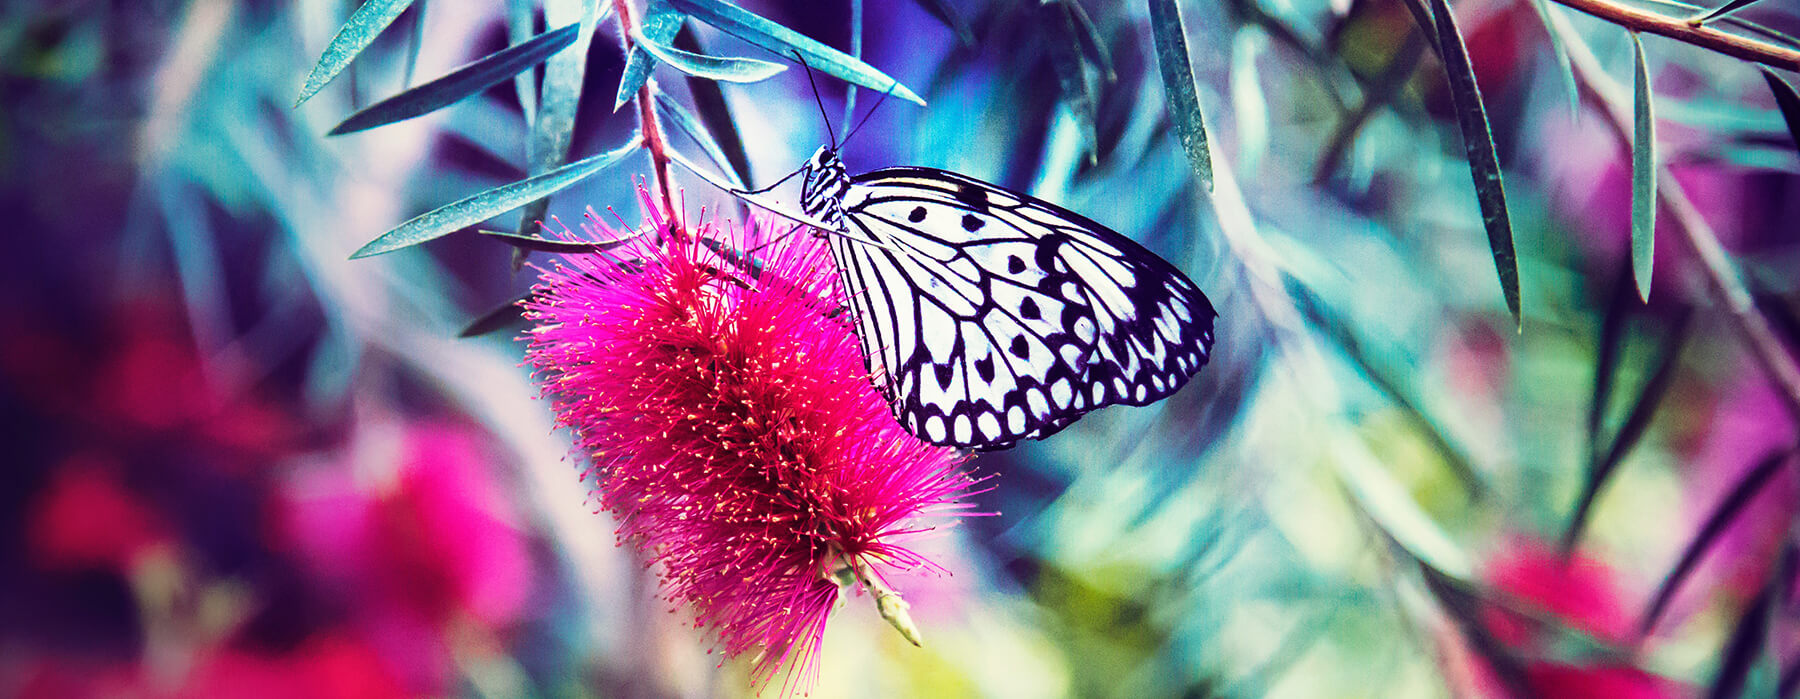 Das Bild zeigt einen Schmetterling auf einer Blüte